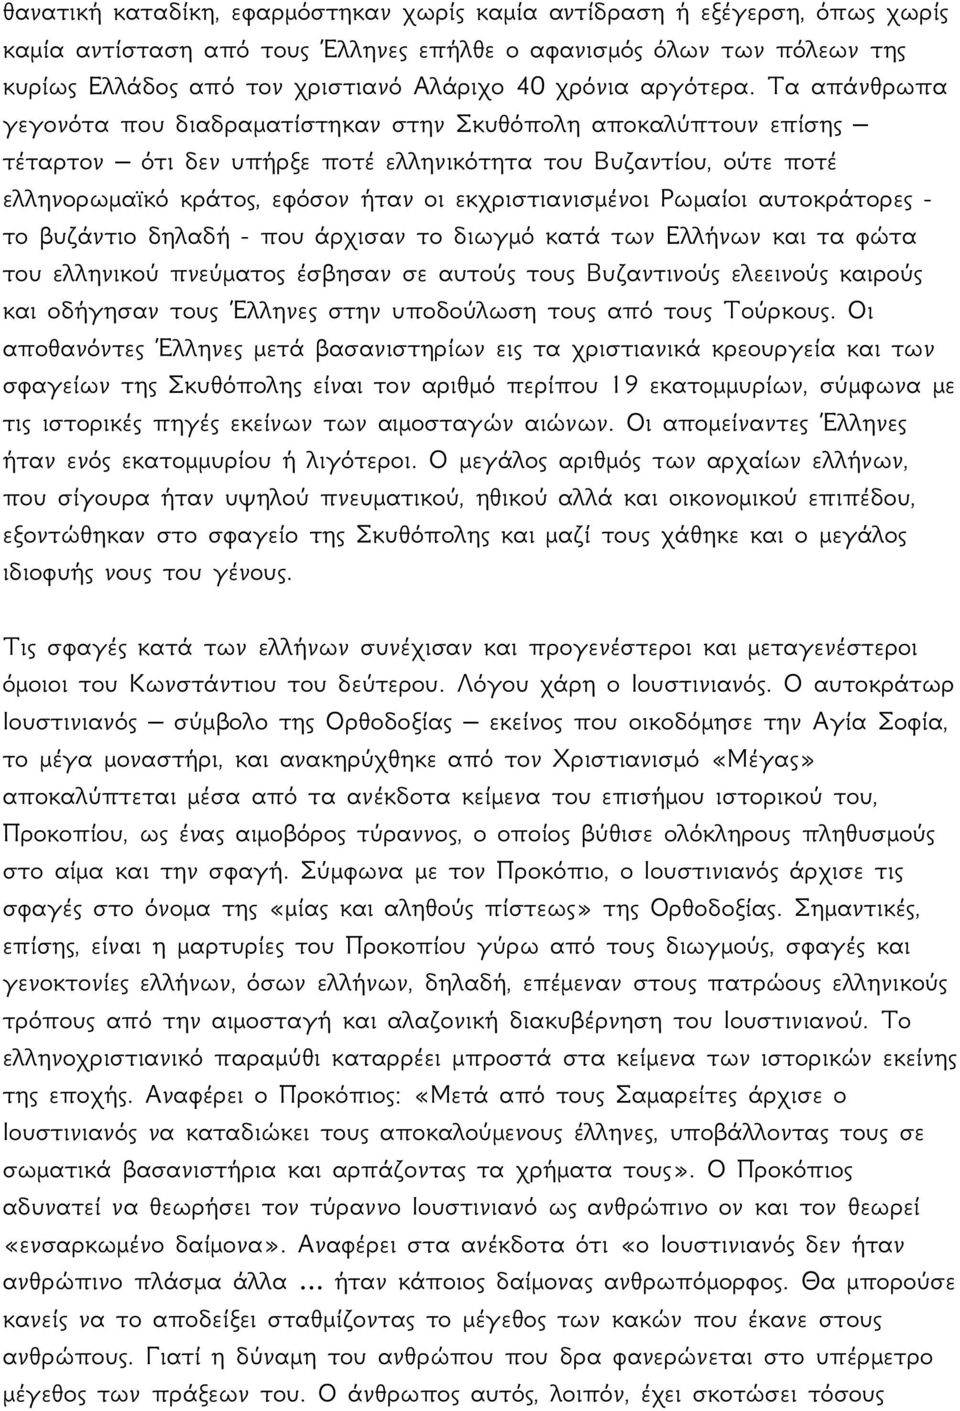 Τα απάνθρωπα γεγονότα που διαδραματίστηκαν στην Σκυθόπολη αποκαλύπτουν επίσης τέταρτον ότι δεν υπήρξε ποτέ ελληνικότητα του Βυζαντίου, ούτε ποτέ ελληνορωμαϊκό κράτος, εφόσον ήταν οι εκχριστιανισμένοι